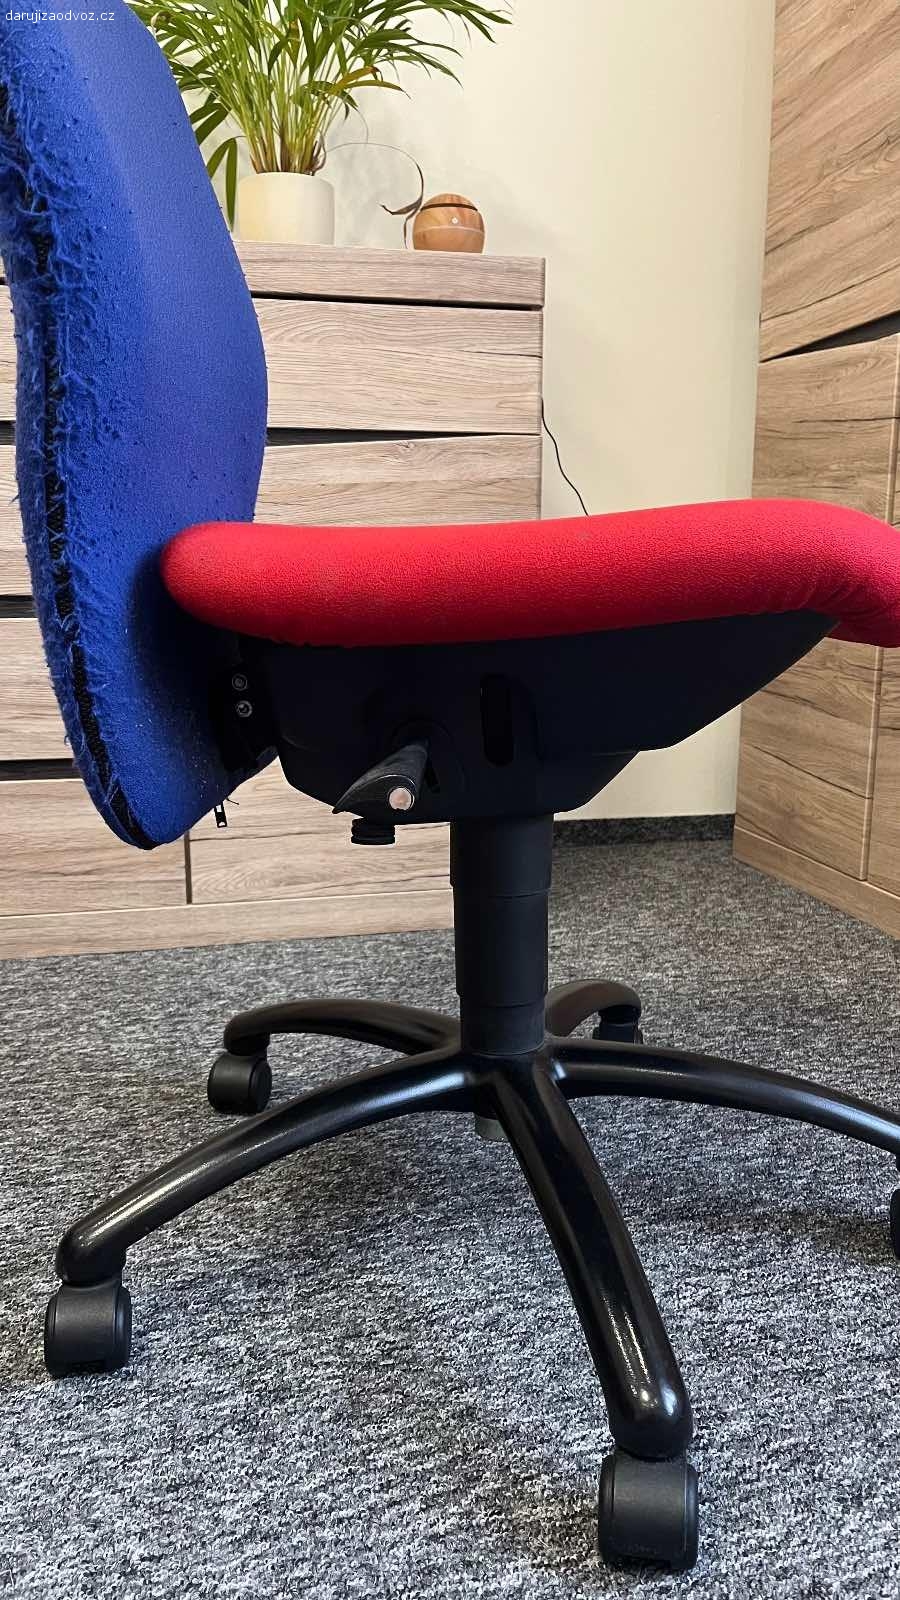 Daruji kancelářskou židli. Starší kancelářská židle. Nerozviklana, ale poničené polstrování. Ulomená páka na nastavování výšky.